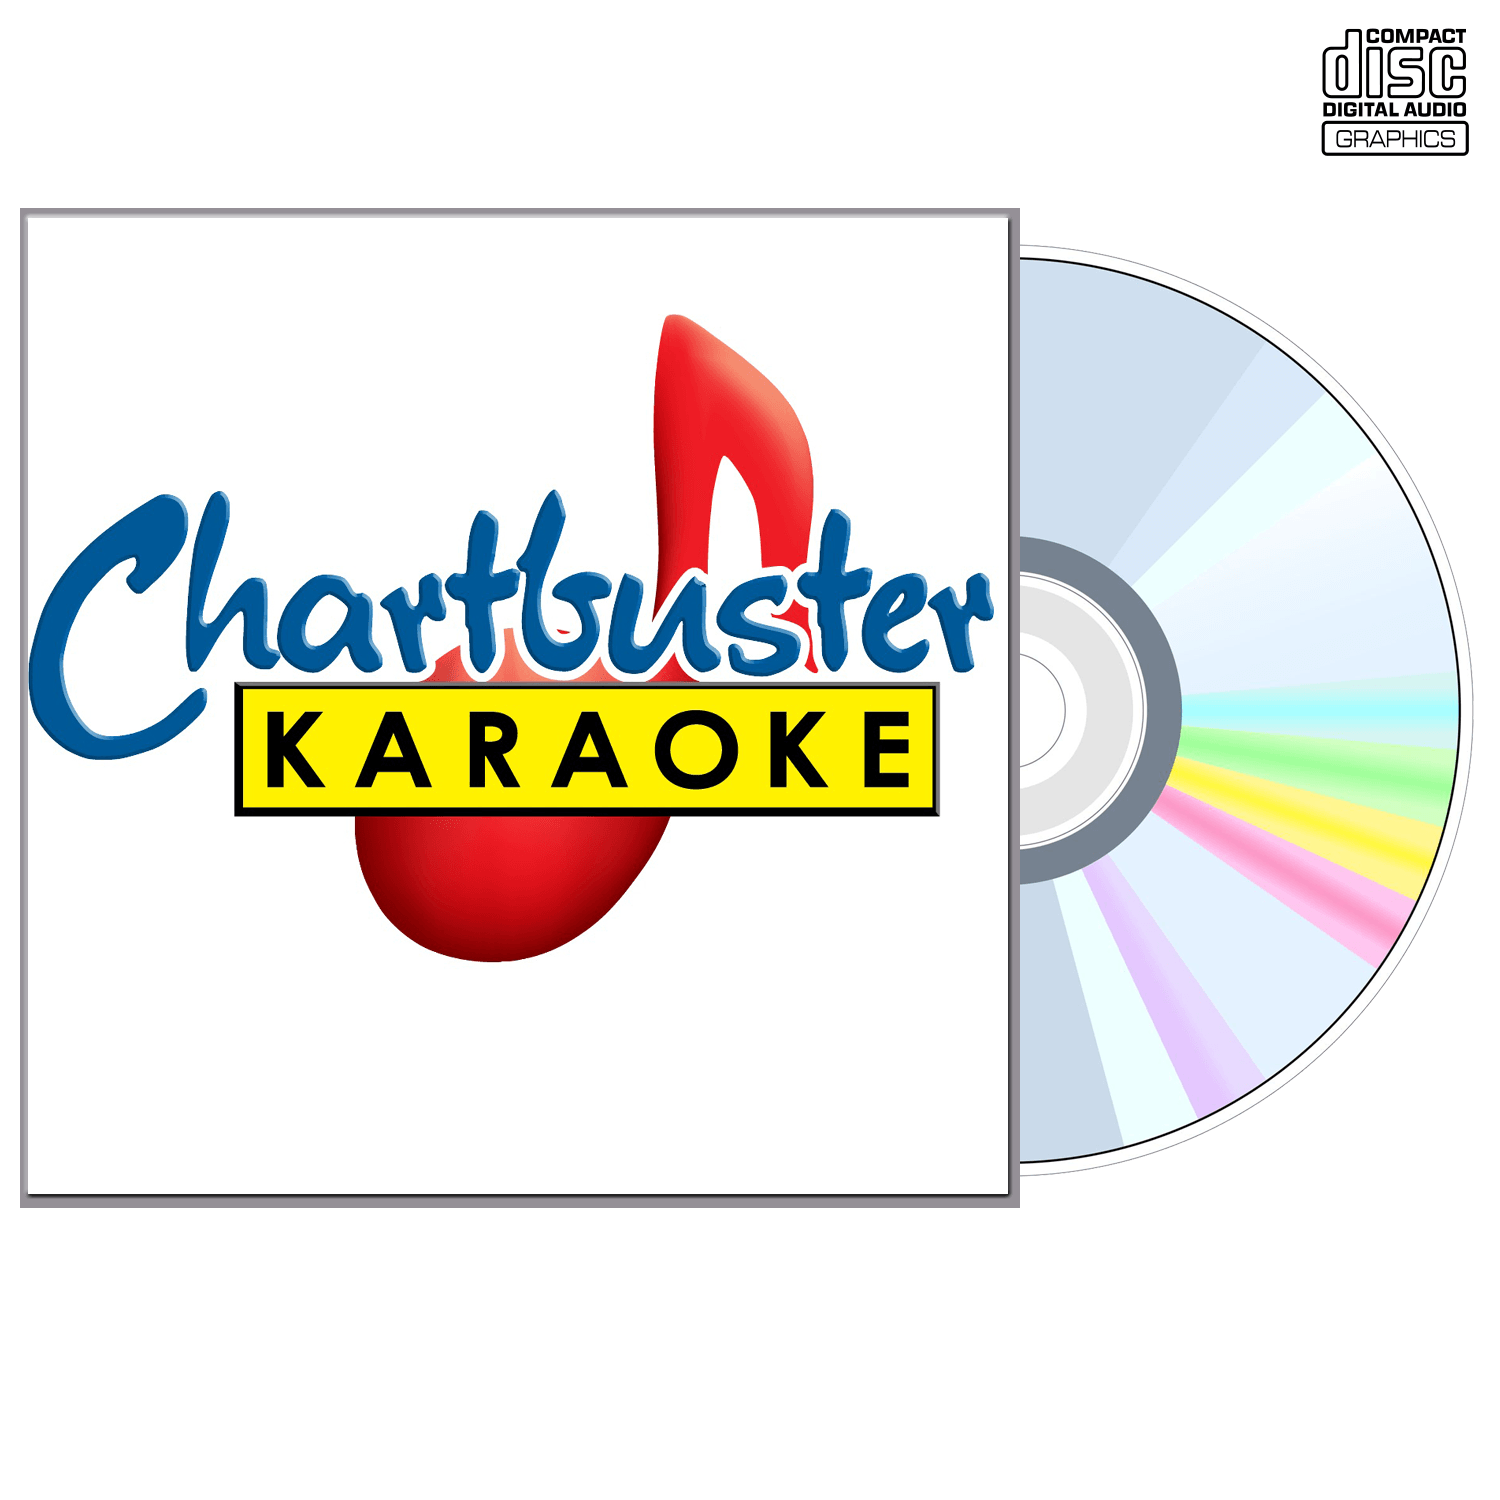 The Wallflowers - CD+G - Chartbuster Karaoke - Karaoke Home Entertainment